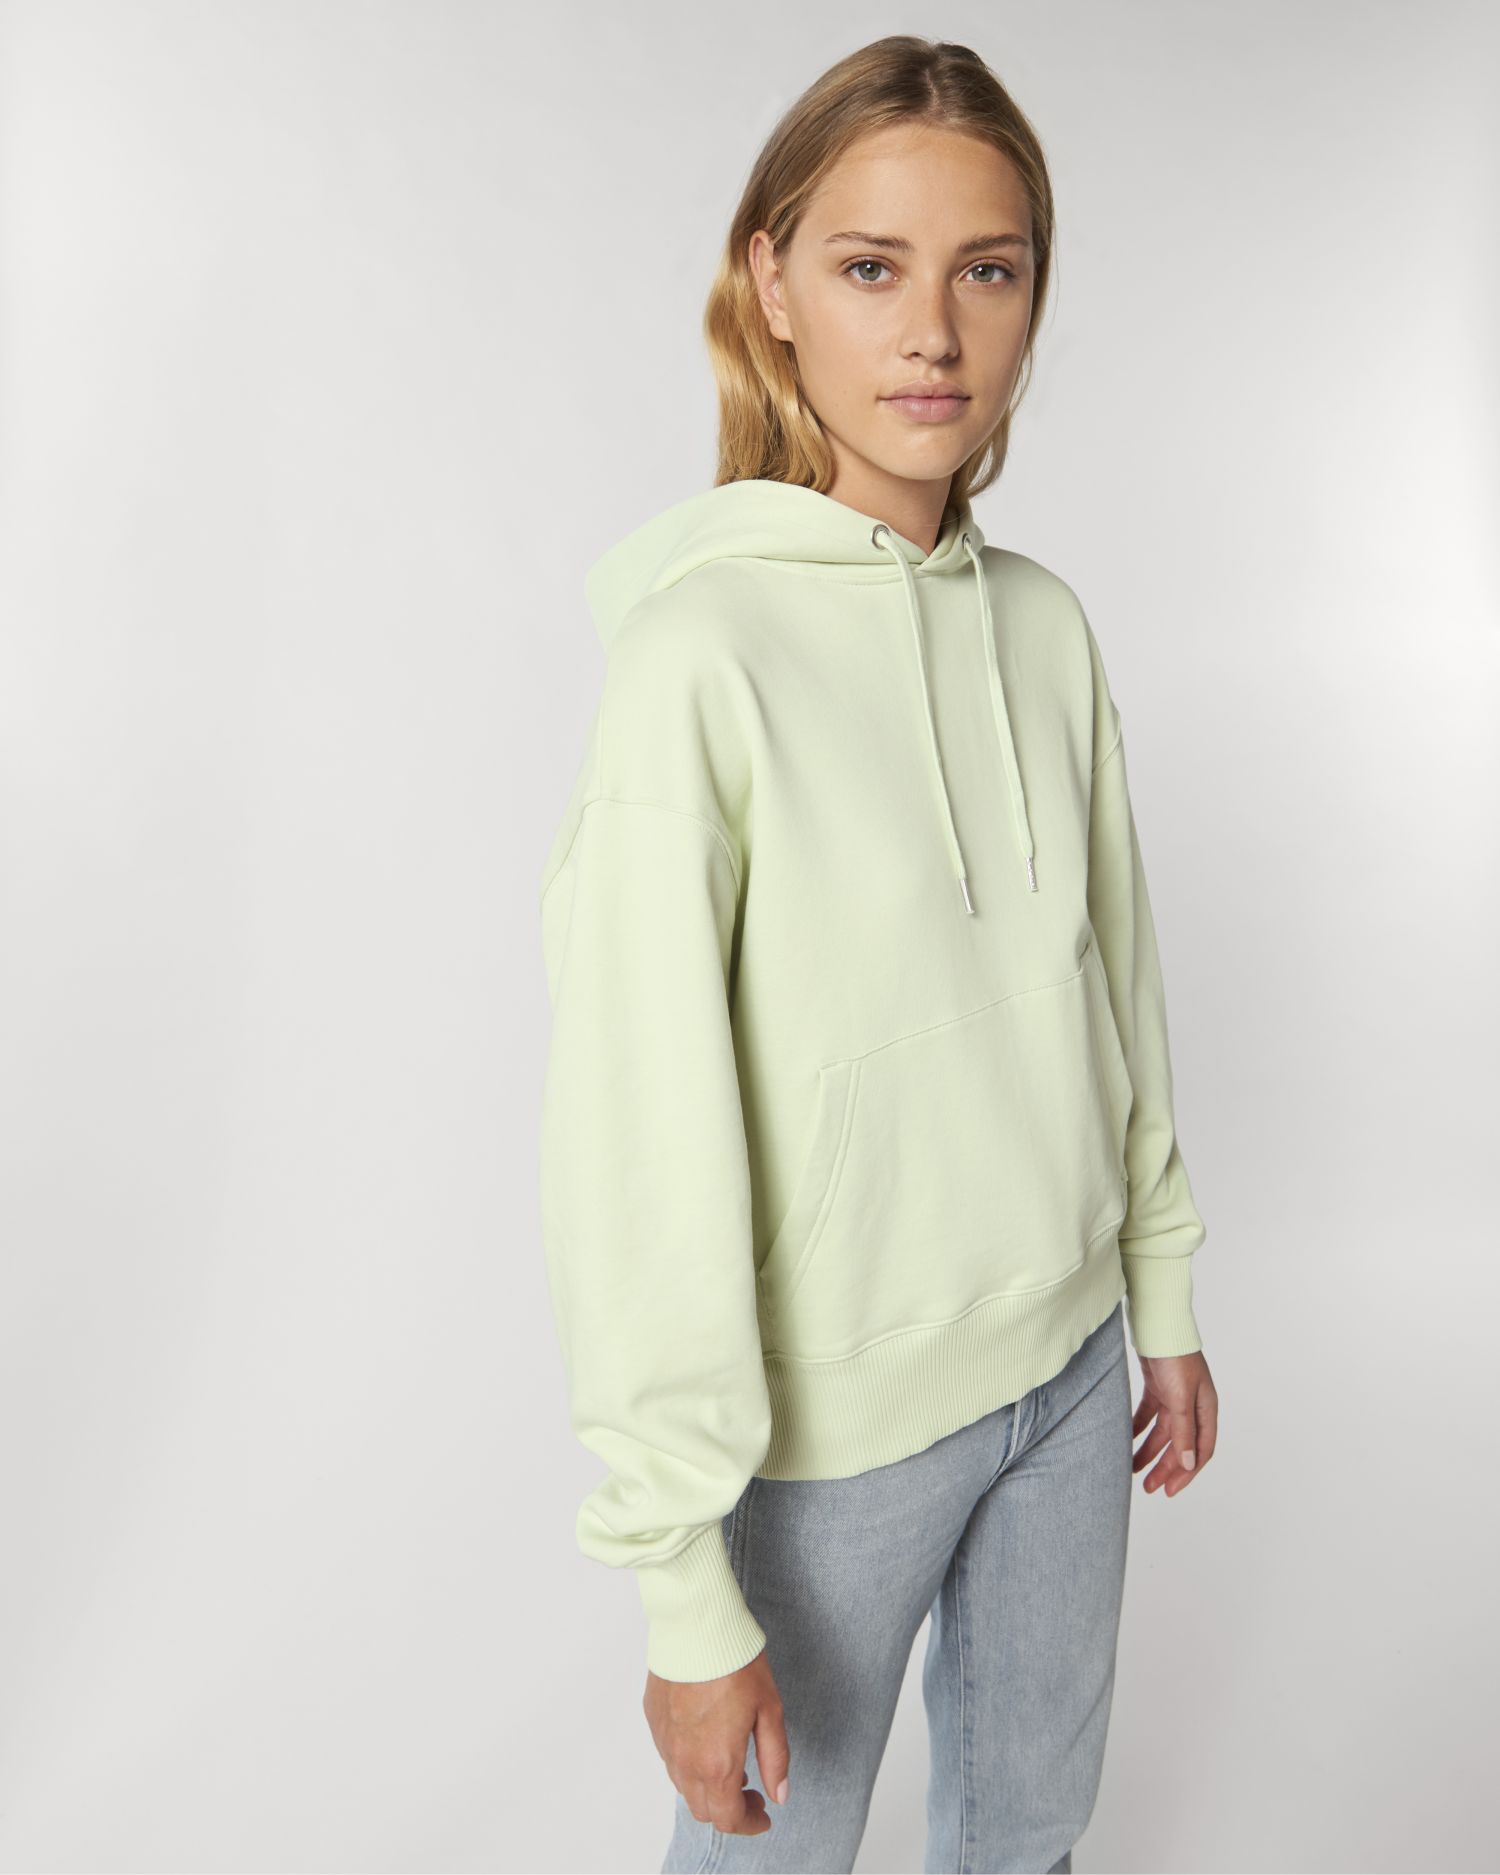 Hoodie sweatshirts Slammer in Farbe Stem Green